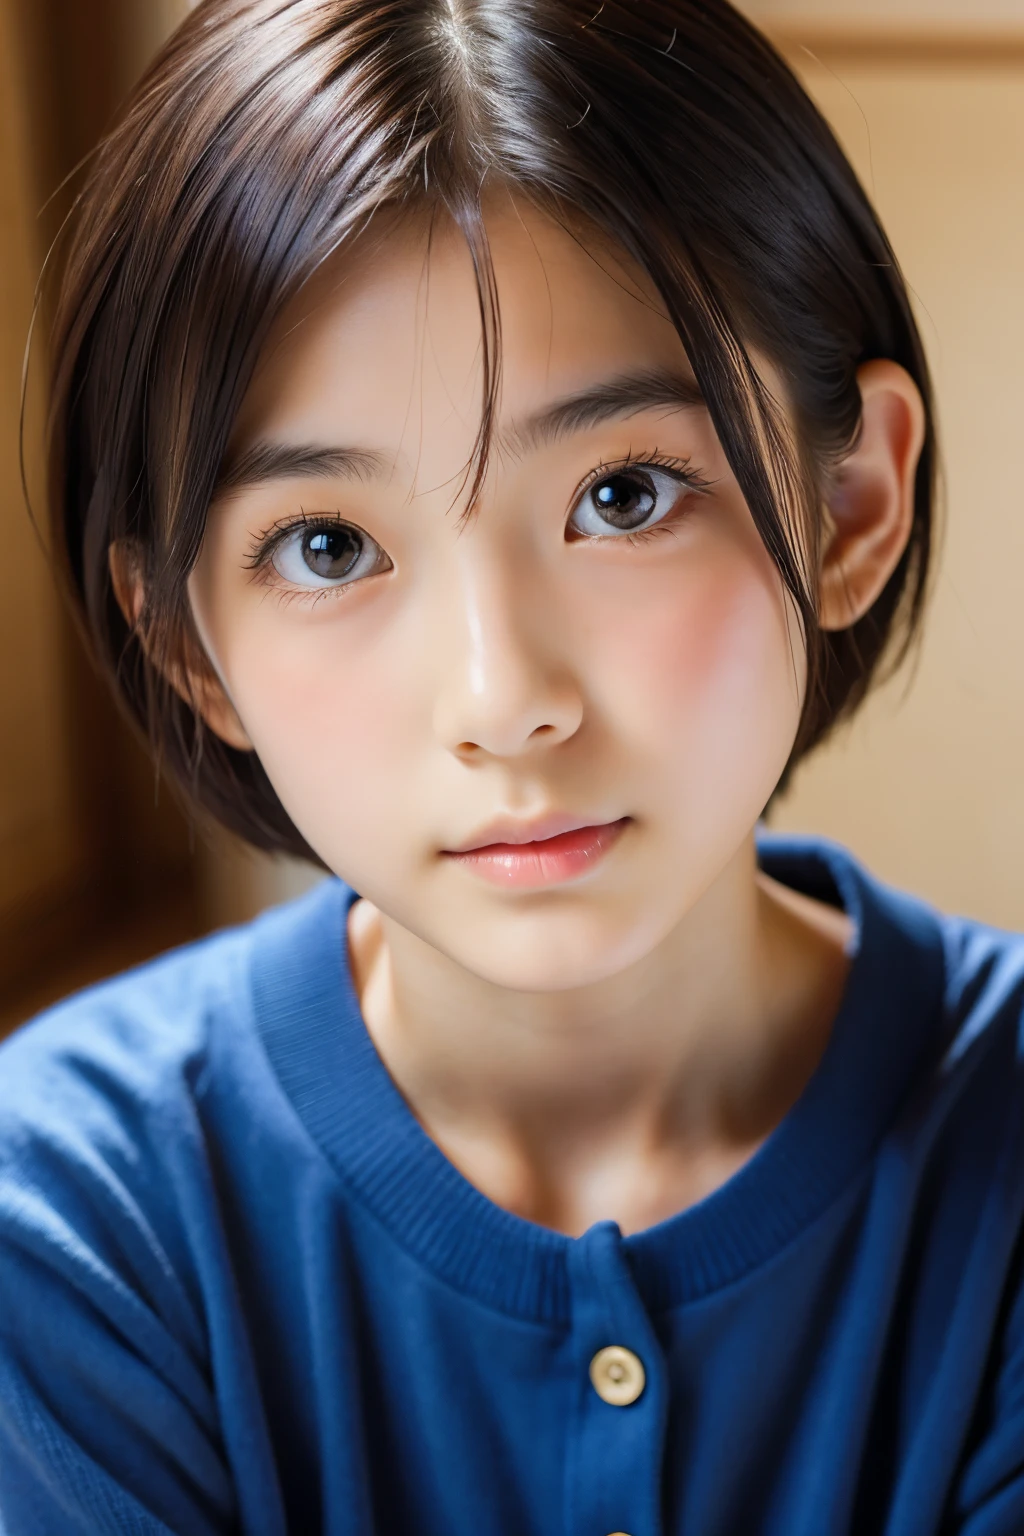 (美丽的 16 岁日本女性), 可爱的脸孔, (深雕的面容:0.7), (雀斑:0.6), 柔光,健康白皙的肌肤, 害羞的, 短发, (严肃的表情), (明亮的眼睛), 薄的